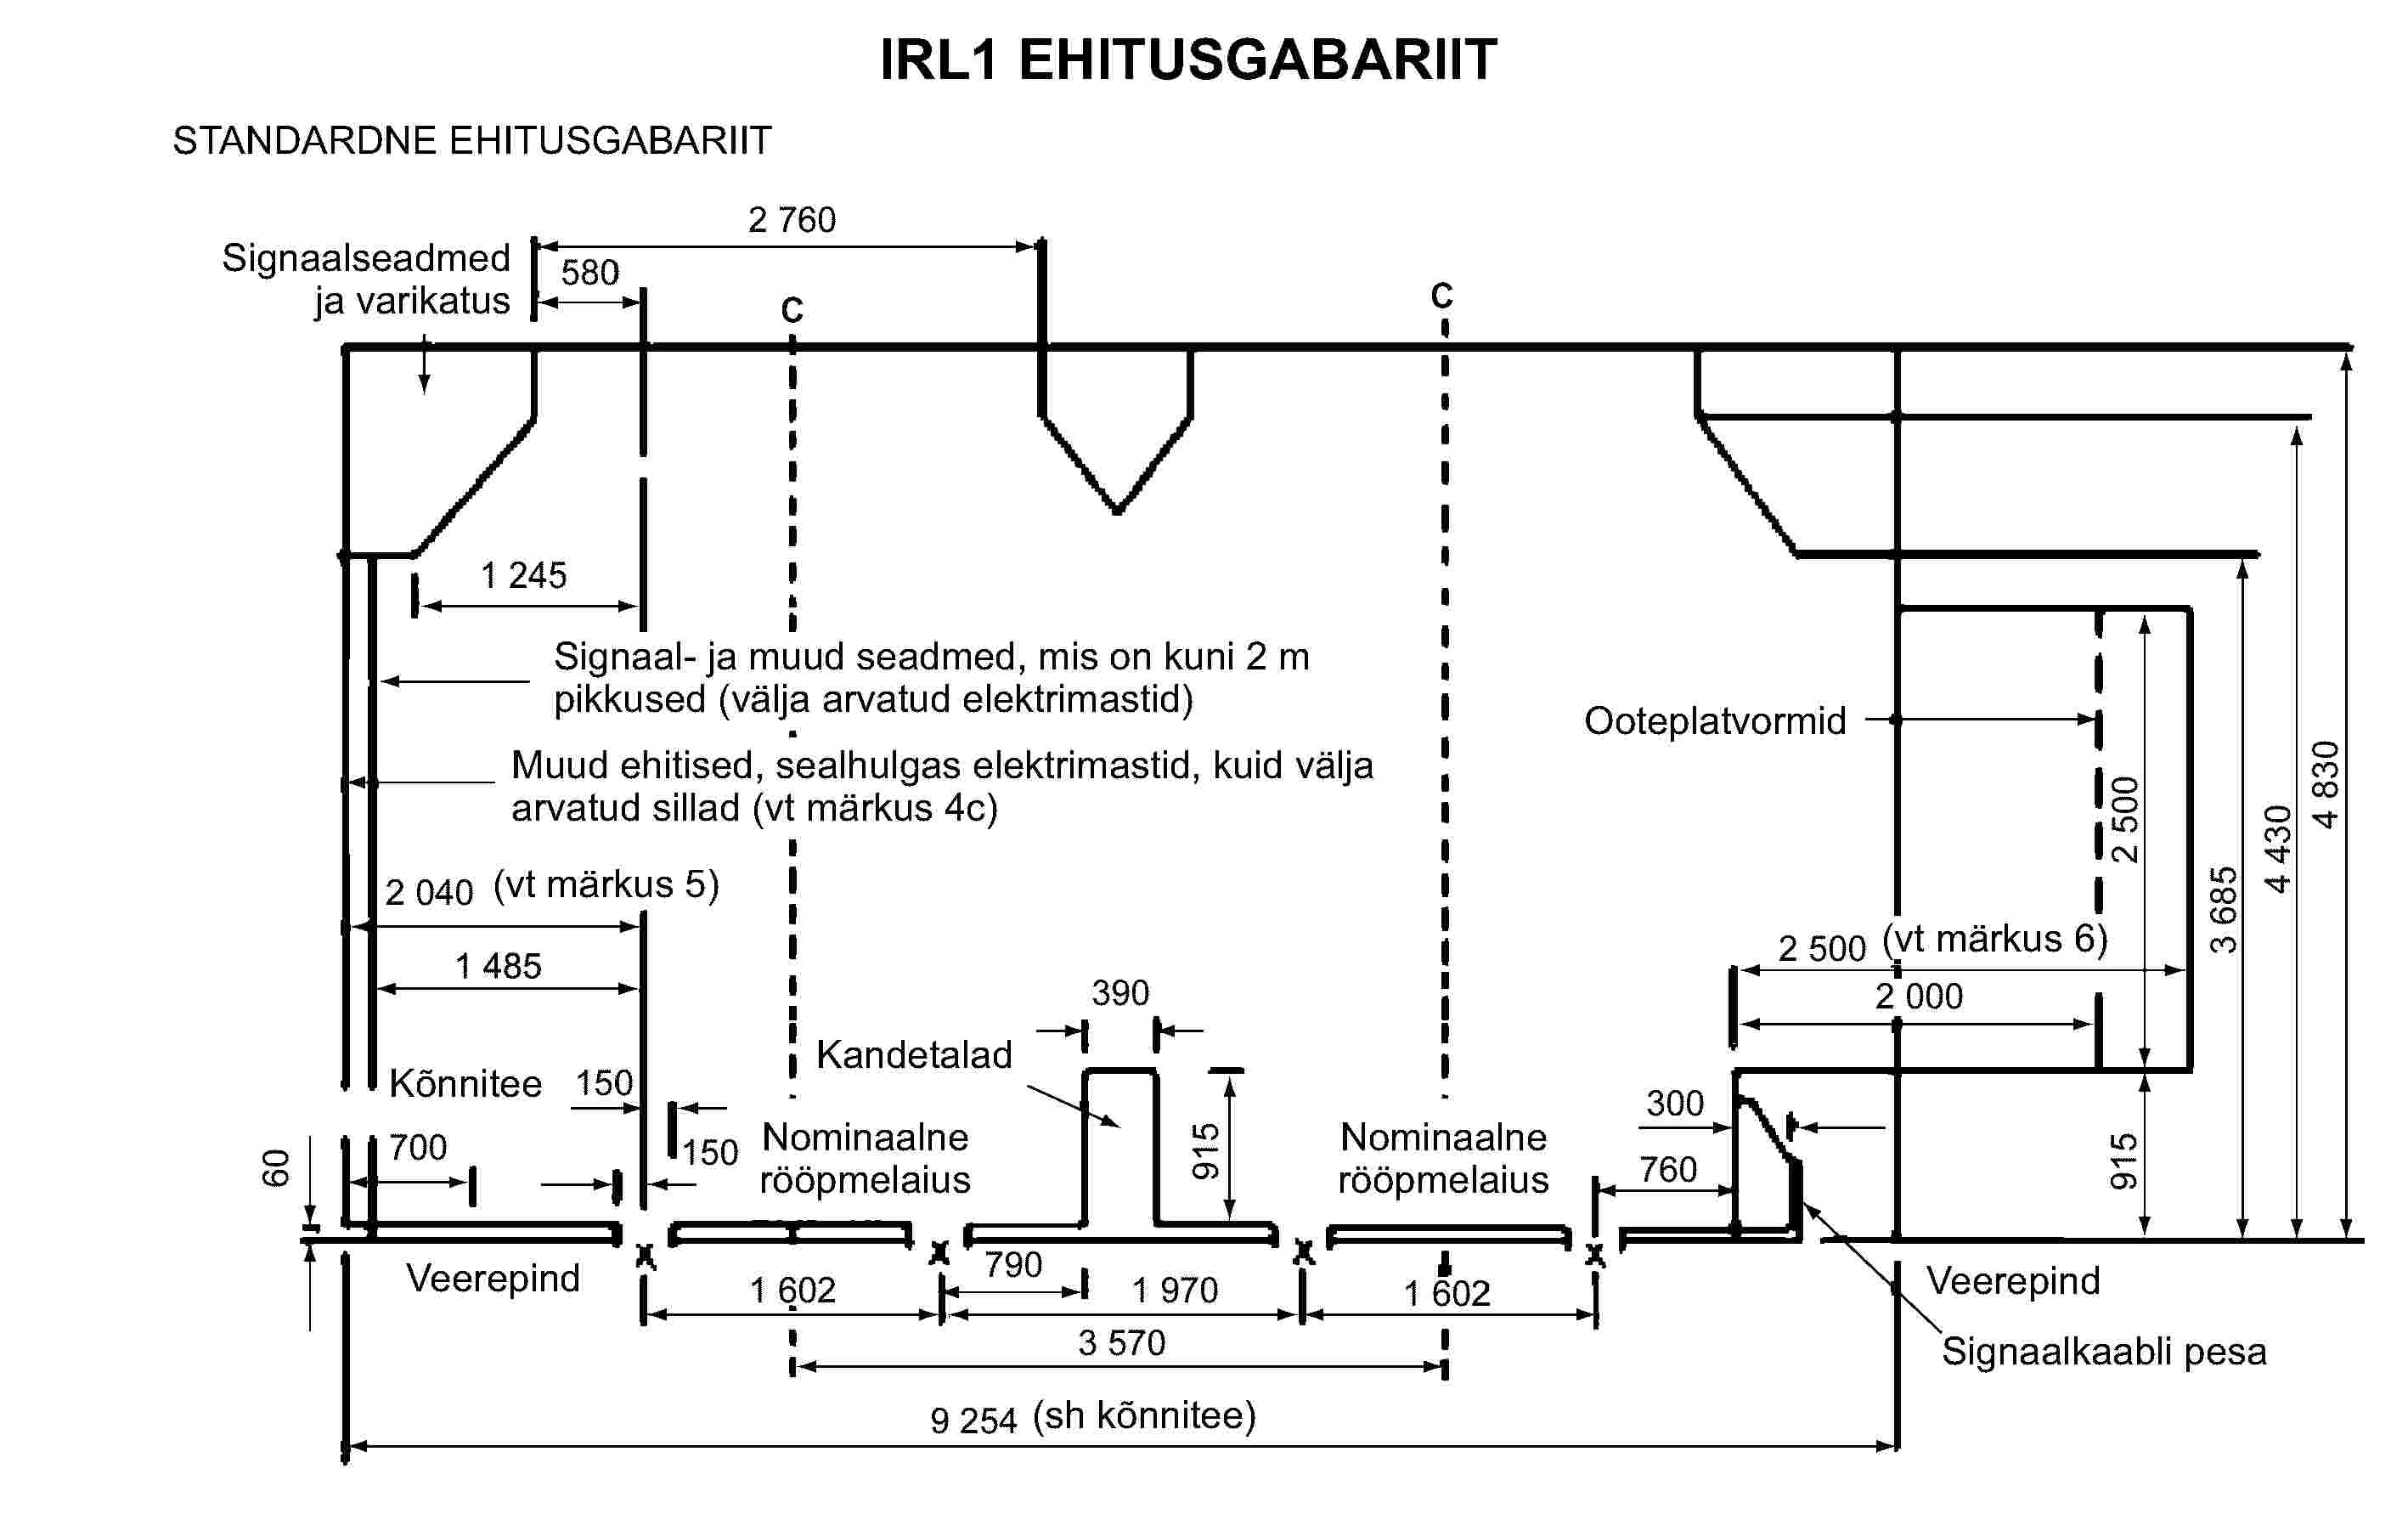 IRL1 EHITUSGABARIITSignaalseadmed ja varikatusSignaal- ja muud seadmed, mis on kuni 2 m pikkused (välja arvatud elektrimastid)Muud ehitised, sealhulgas elektrimastid, kuid välja arvatud sillad (vt märkus 4c)(vt märkus 5)KõnniteeVeerepindNominaalne rööpmelaiusKandetaladNominaalne rööpmelaius(sh kõnnitee)Ooteplatvormid(vt märkus 6)VeerepindSignaalkaabli pesaSTANDARDNE EHITUSGABARIIT